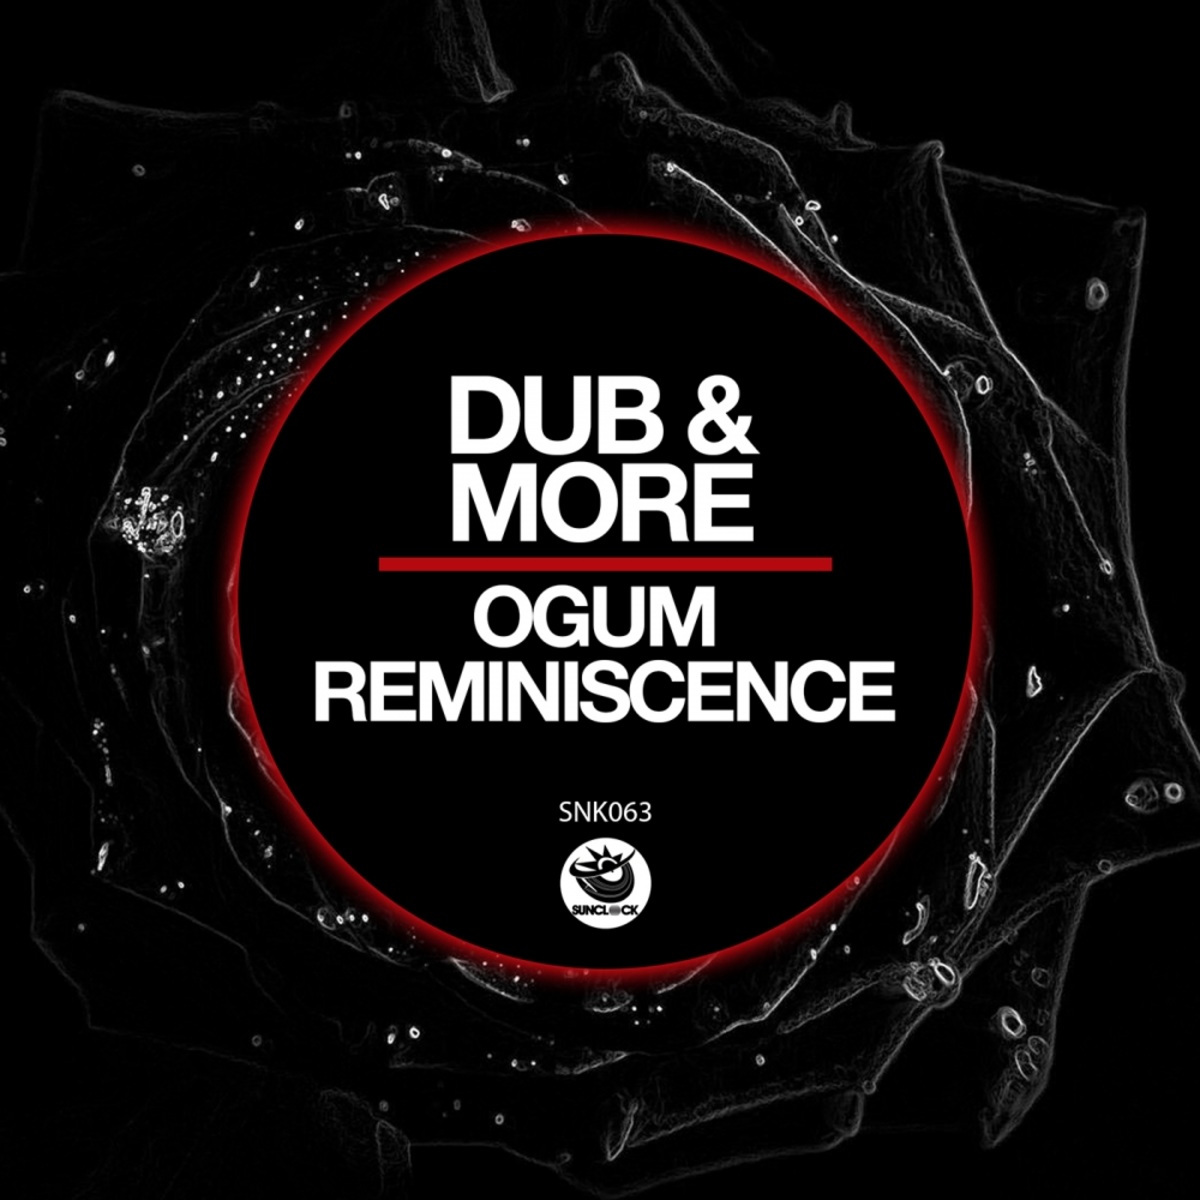 Dub & More - Ogum Reminiscence / Sunclock